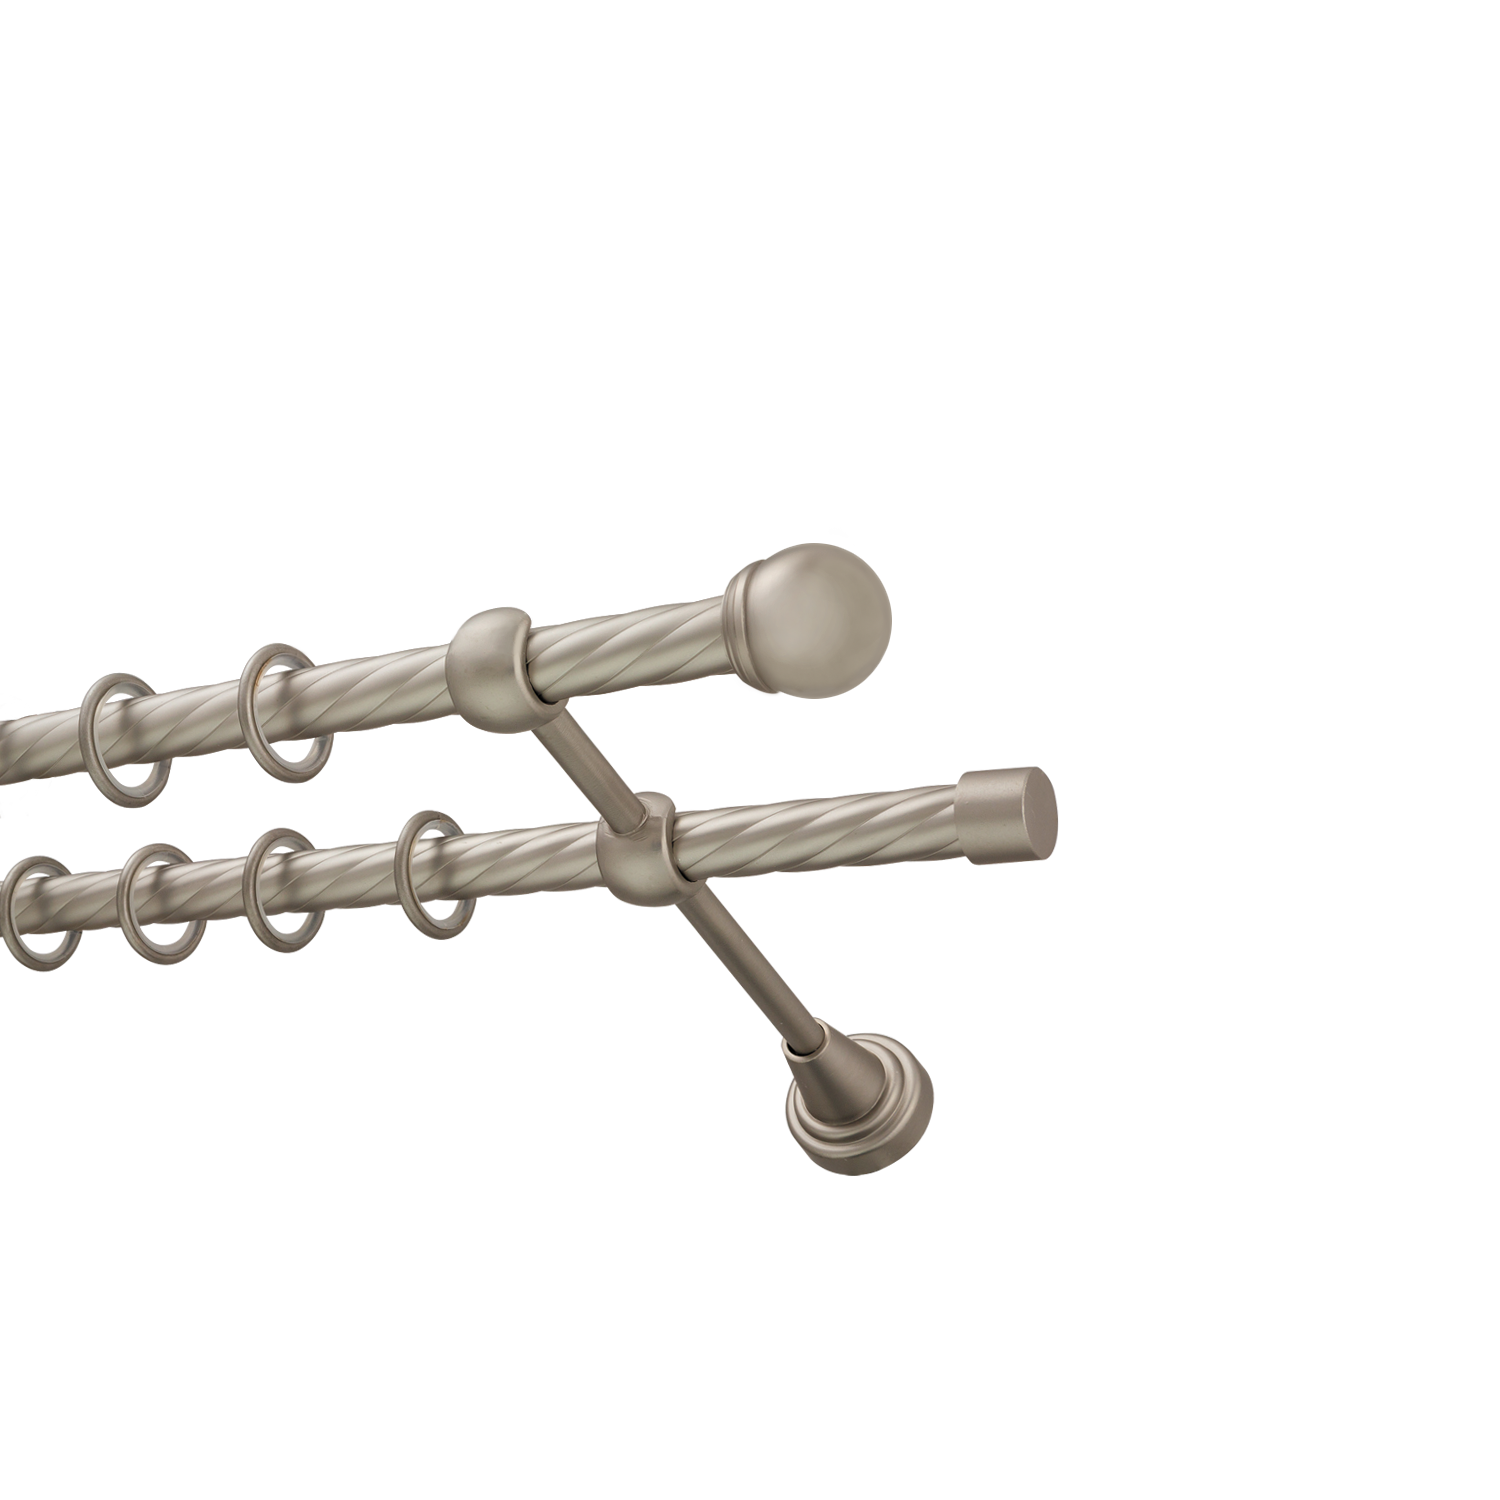 Металлический карниз для штор Вива, двухрядный 16/16 мм, сталь, витая штанга, длина 160 см